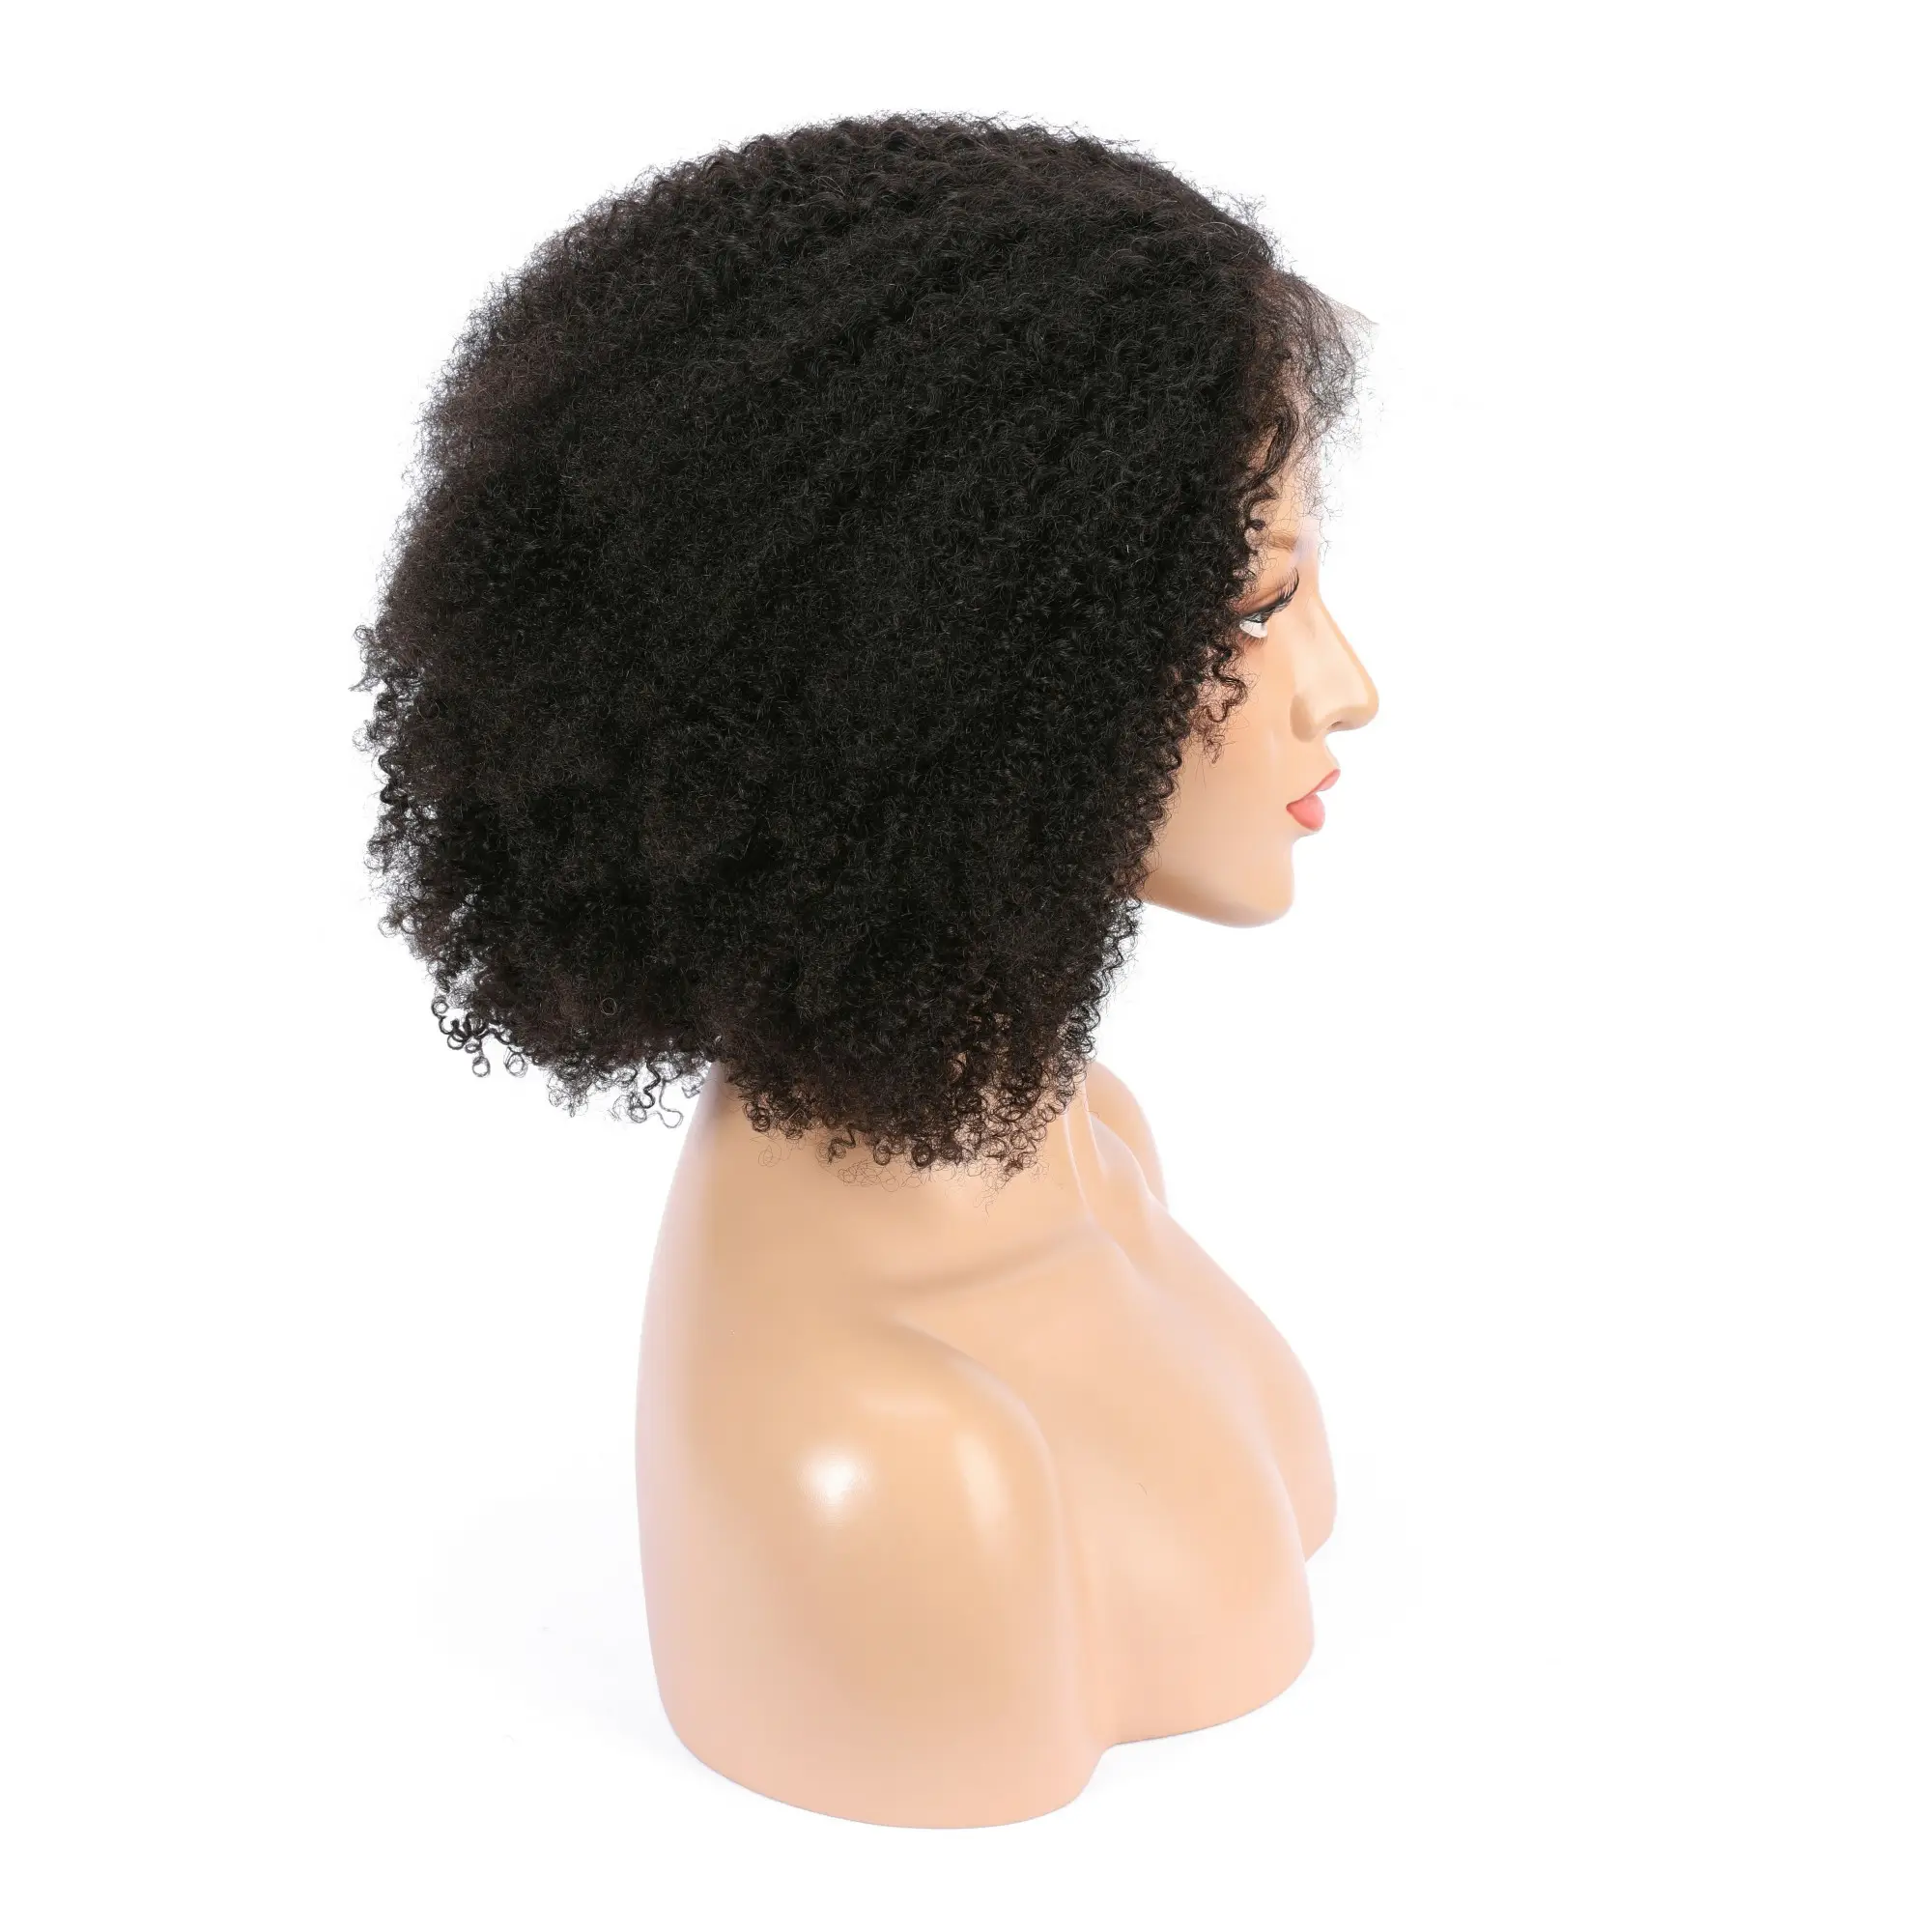 Doğal görünümlü gerçekçi kısa insan saçı afro kıvırcık şeffaf dantel ön peruk afrika bayan